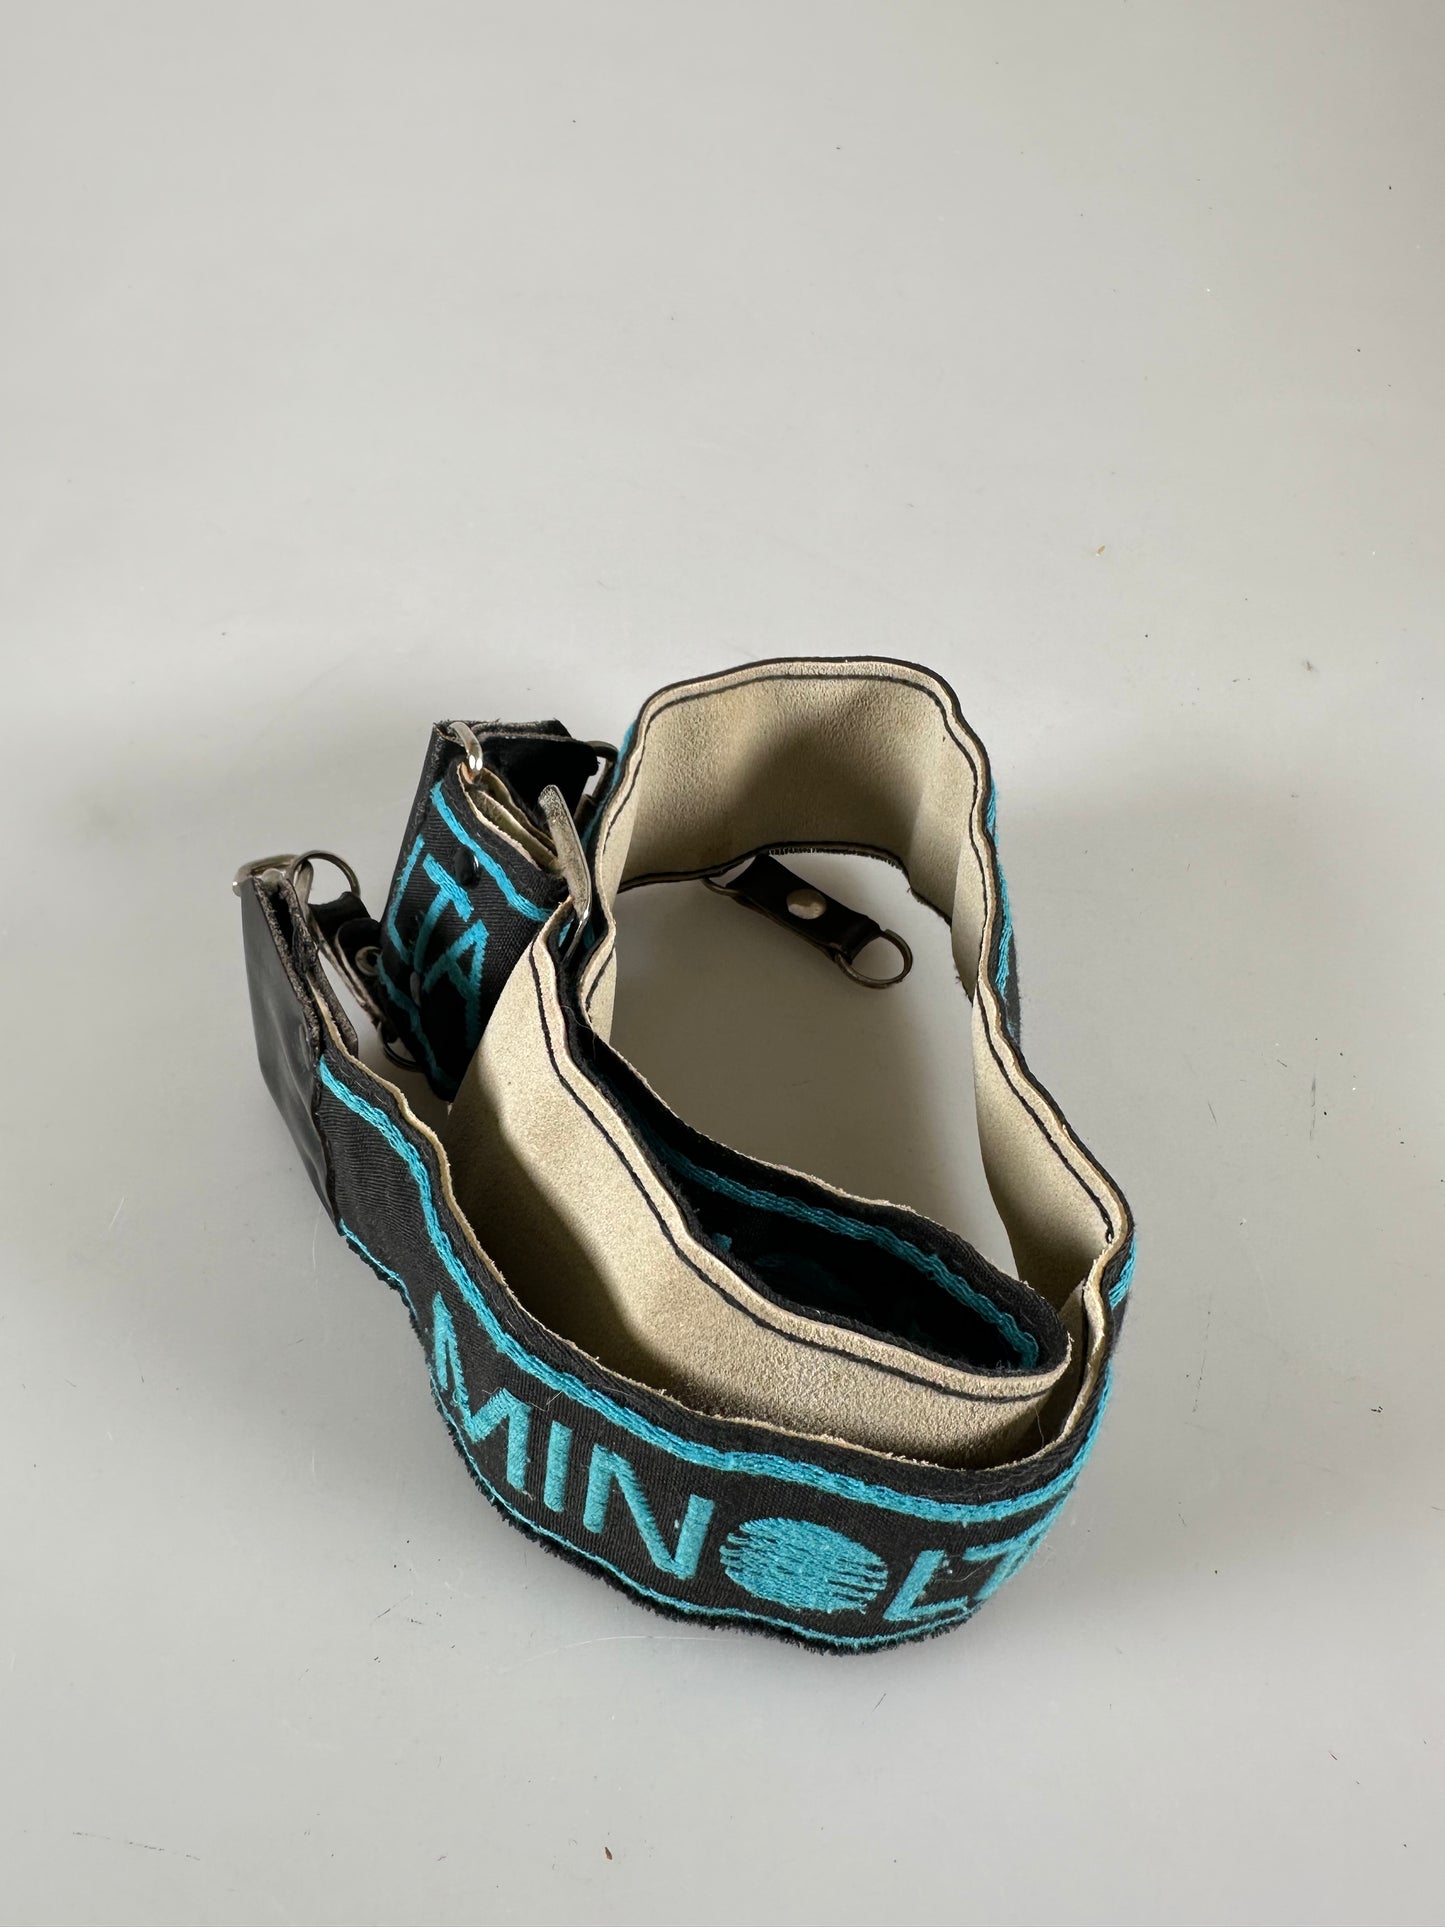 Minolta Vintage Neck Strap for SLR DSLR Cameras - Blue Black